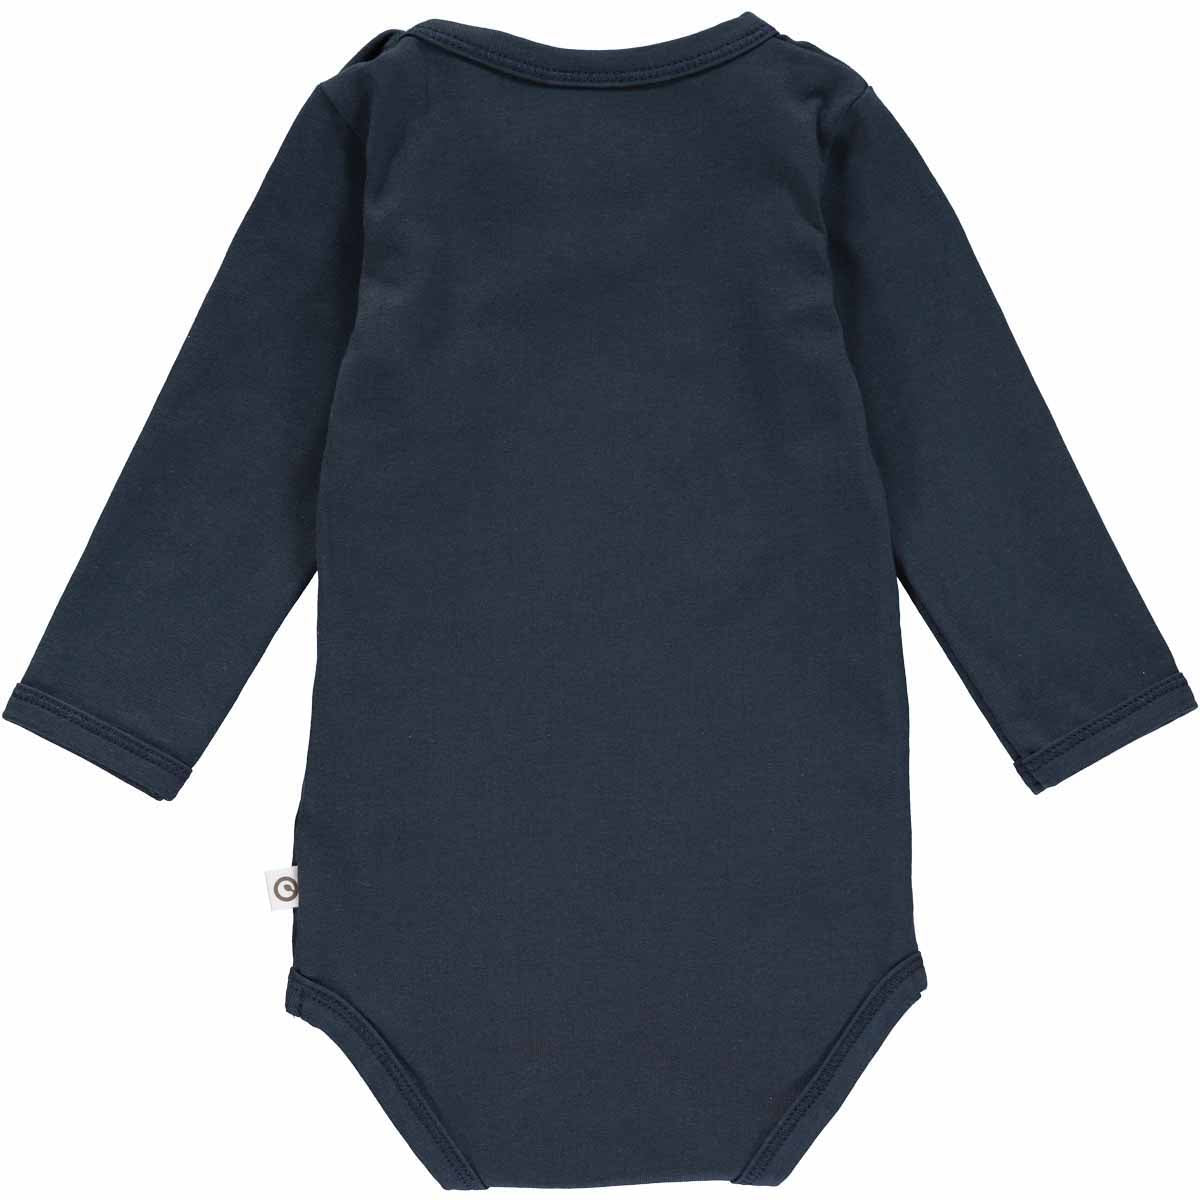 Een stoere toevoeging aan de garderobe van jouw baby: caravan applique rompertje night blue van Müsli. Gemaakt van 100% organisch katoen en verkrijgbaar in diverse maten. Leuk als kraamcadeautje! VanZus